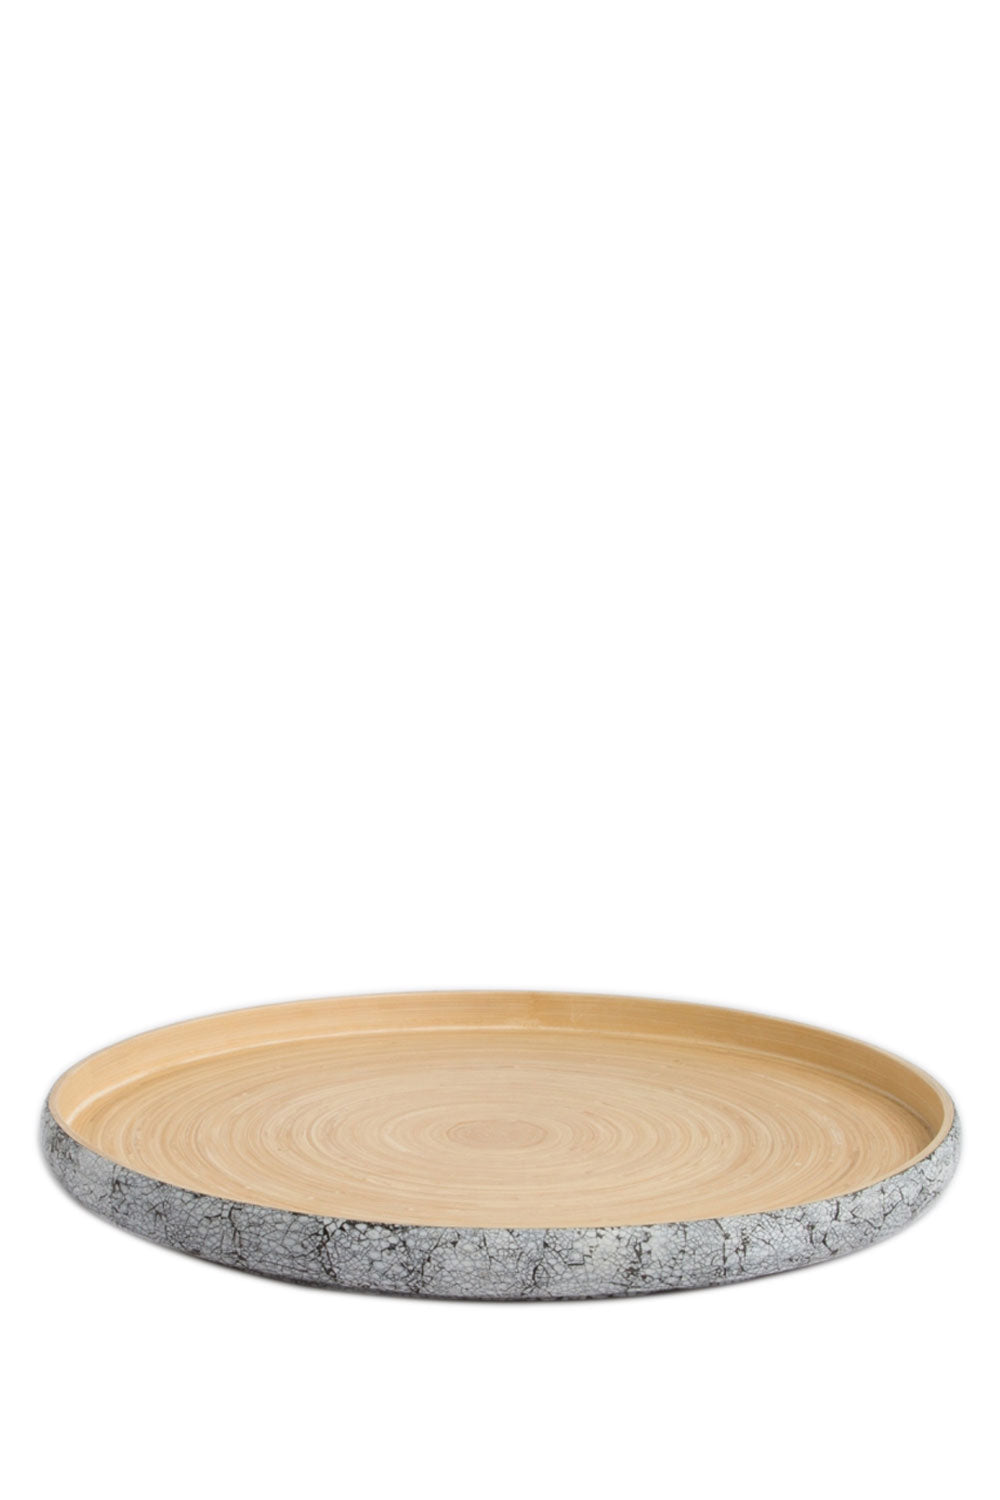 KHAY Eggshell Bamboo Tray, 45 cm - Maison7